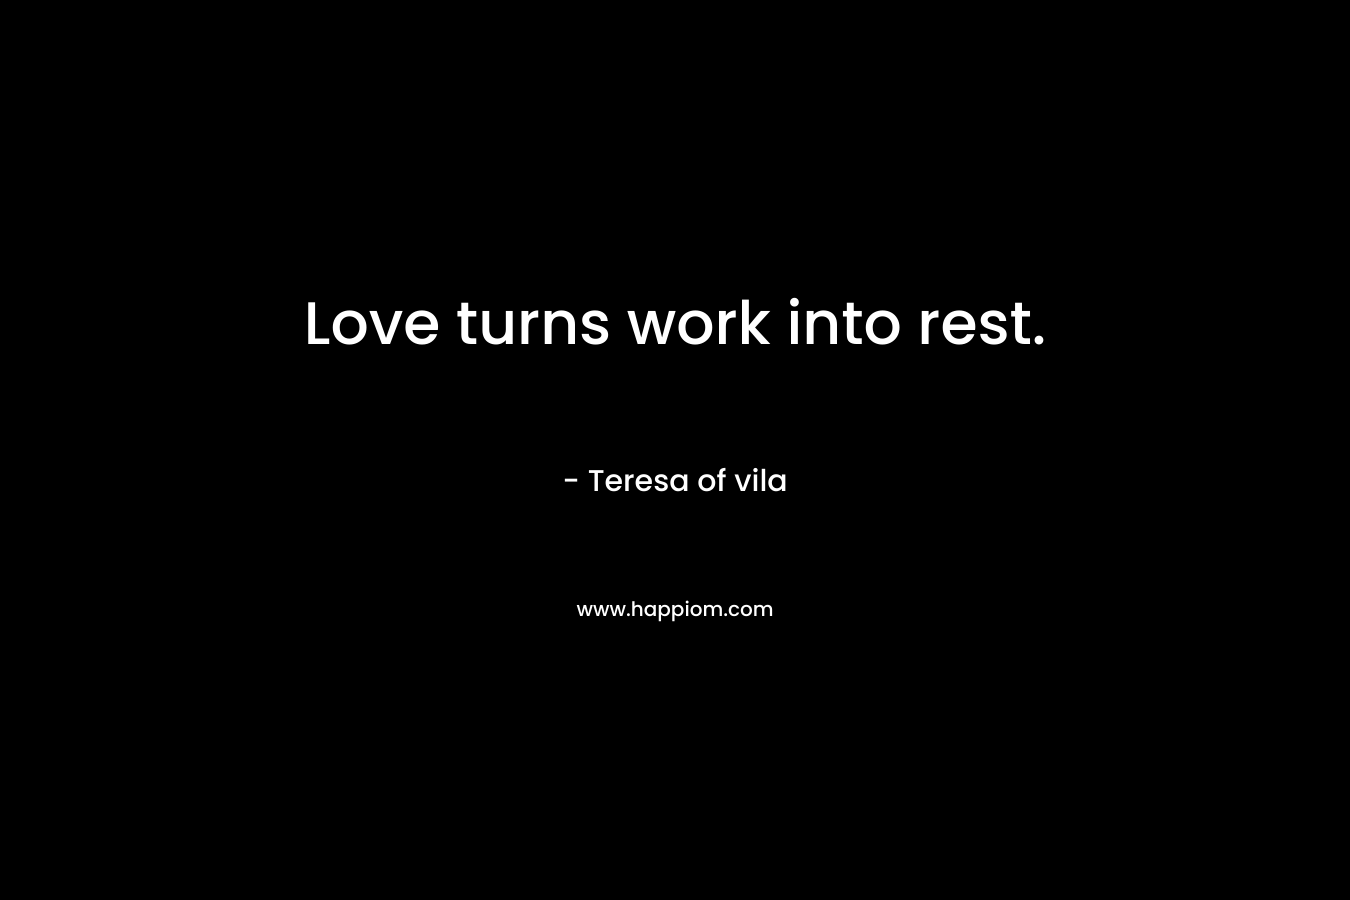 Love turns work into rest. – Teresa of vila